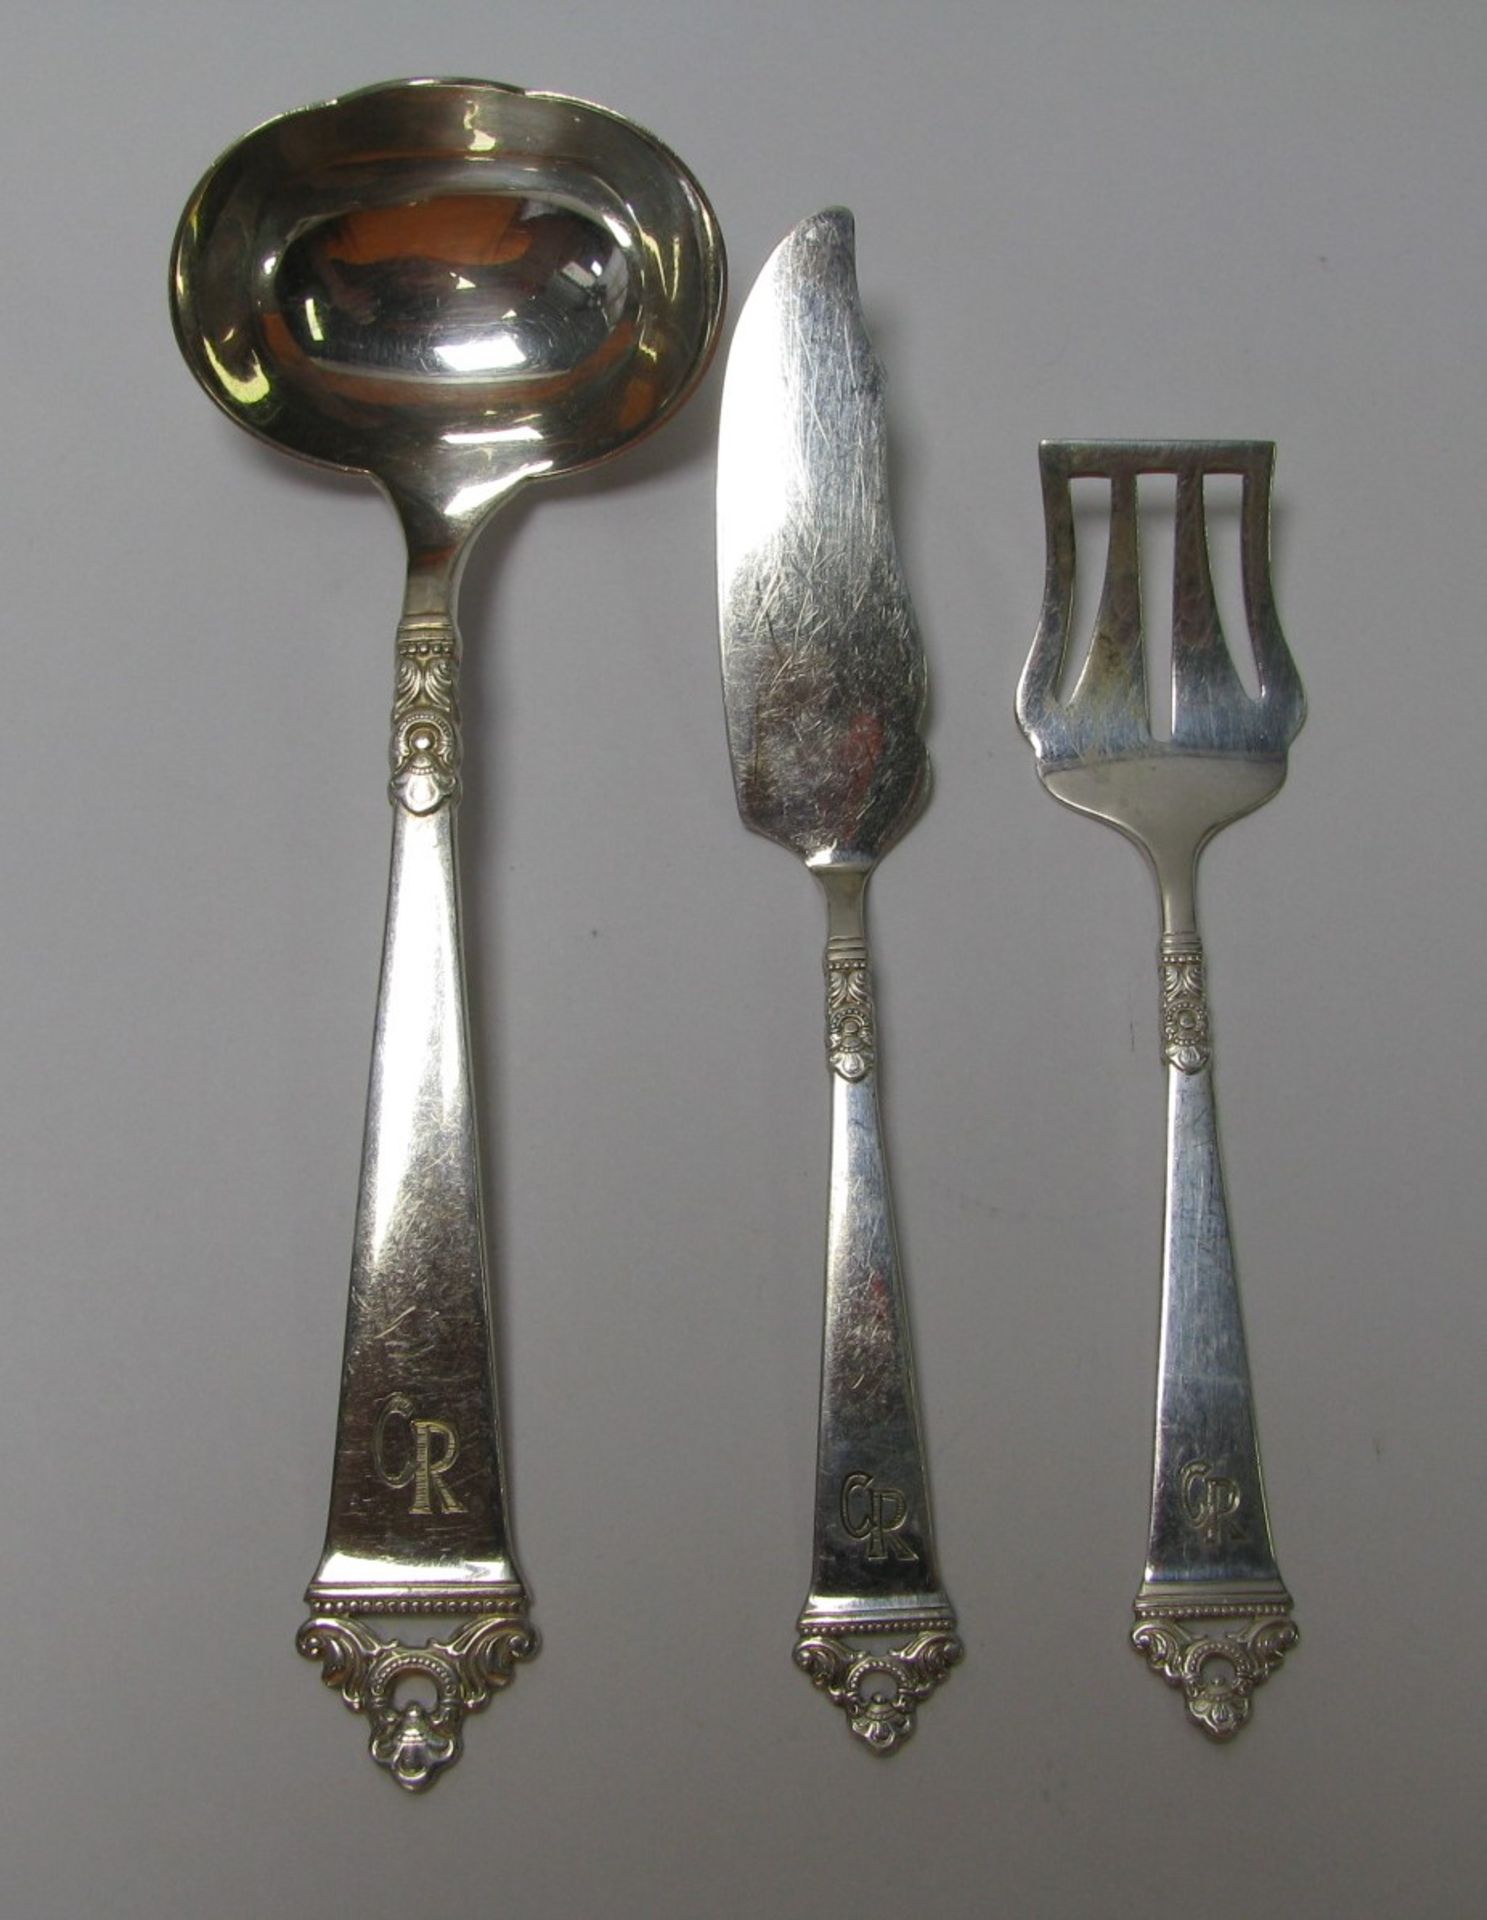 3 Vorleger, 830er Silber, gepunzt, 72 g, Monogramm "CR", längste l 16 cm.